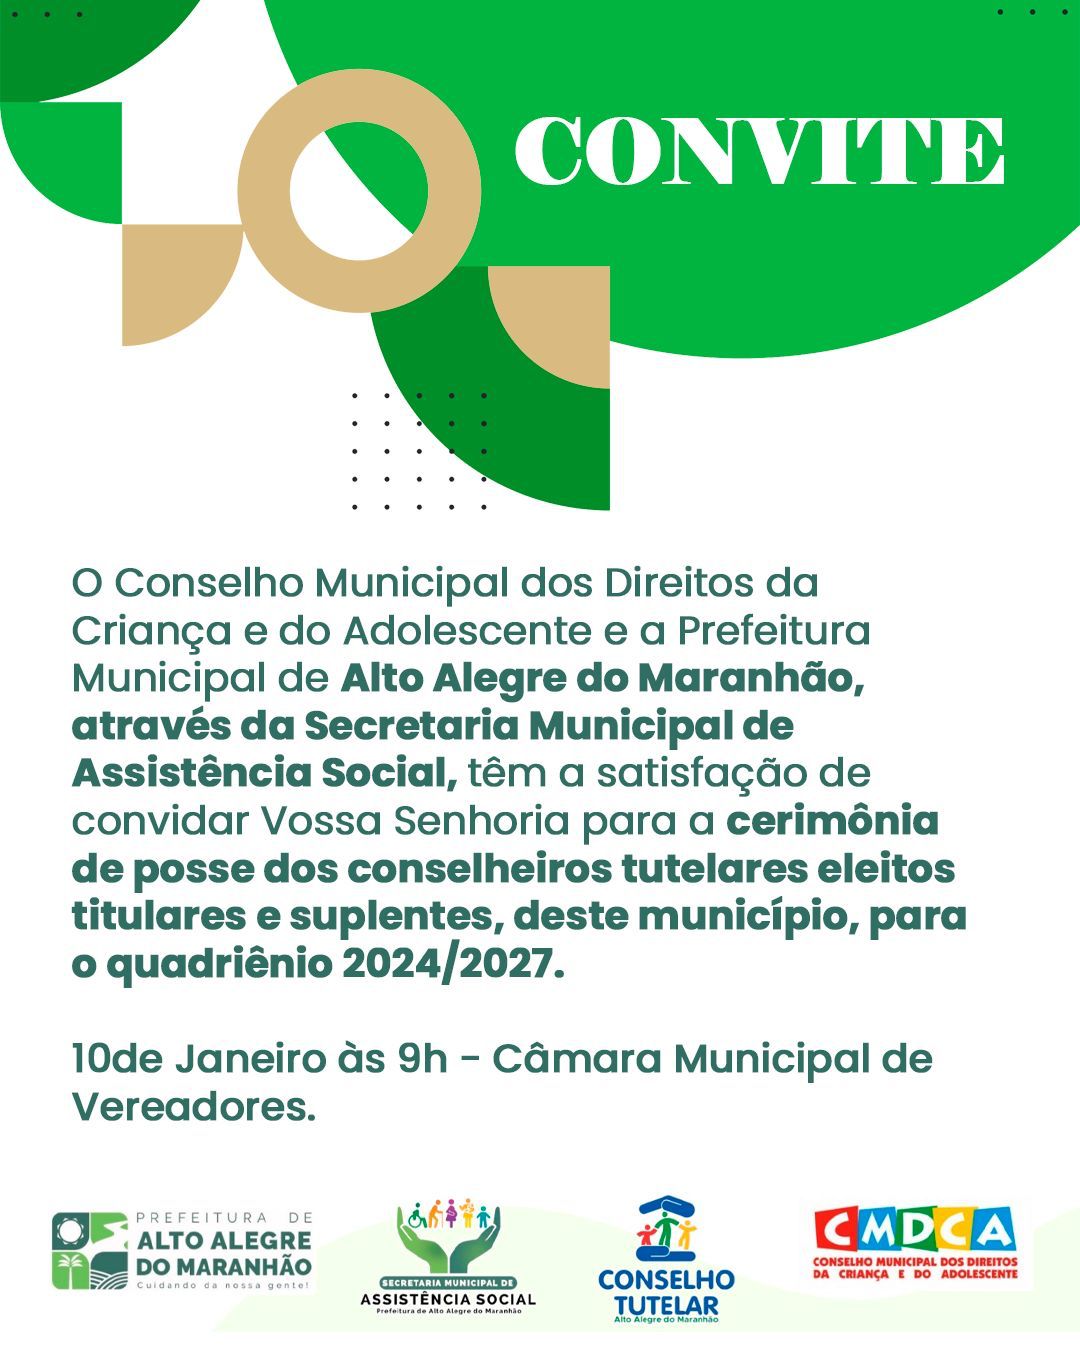 Convite Especial: Cerimônia de Posse dos Conselheiros Tutelares de Alto Alegre do Maranhão para o Quadriênio 2024/2027